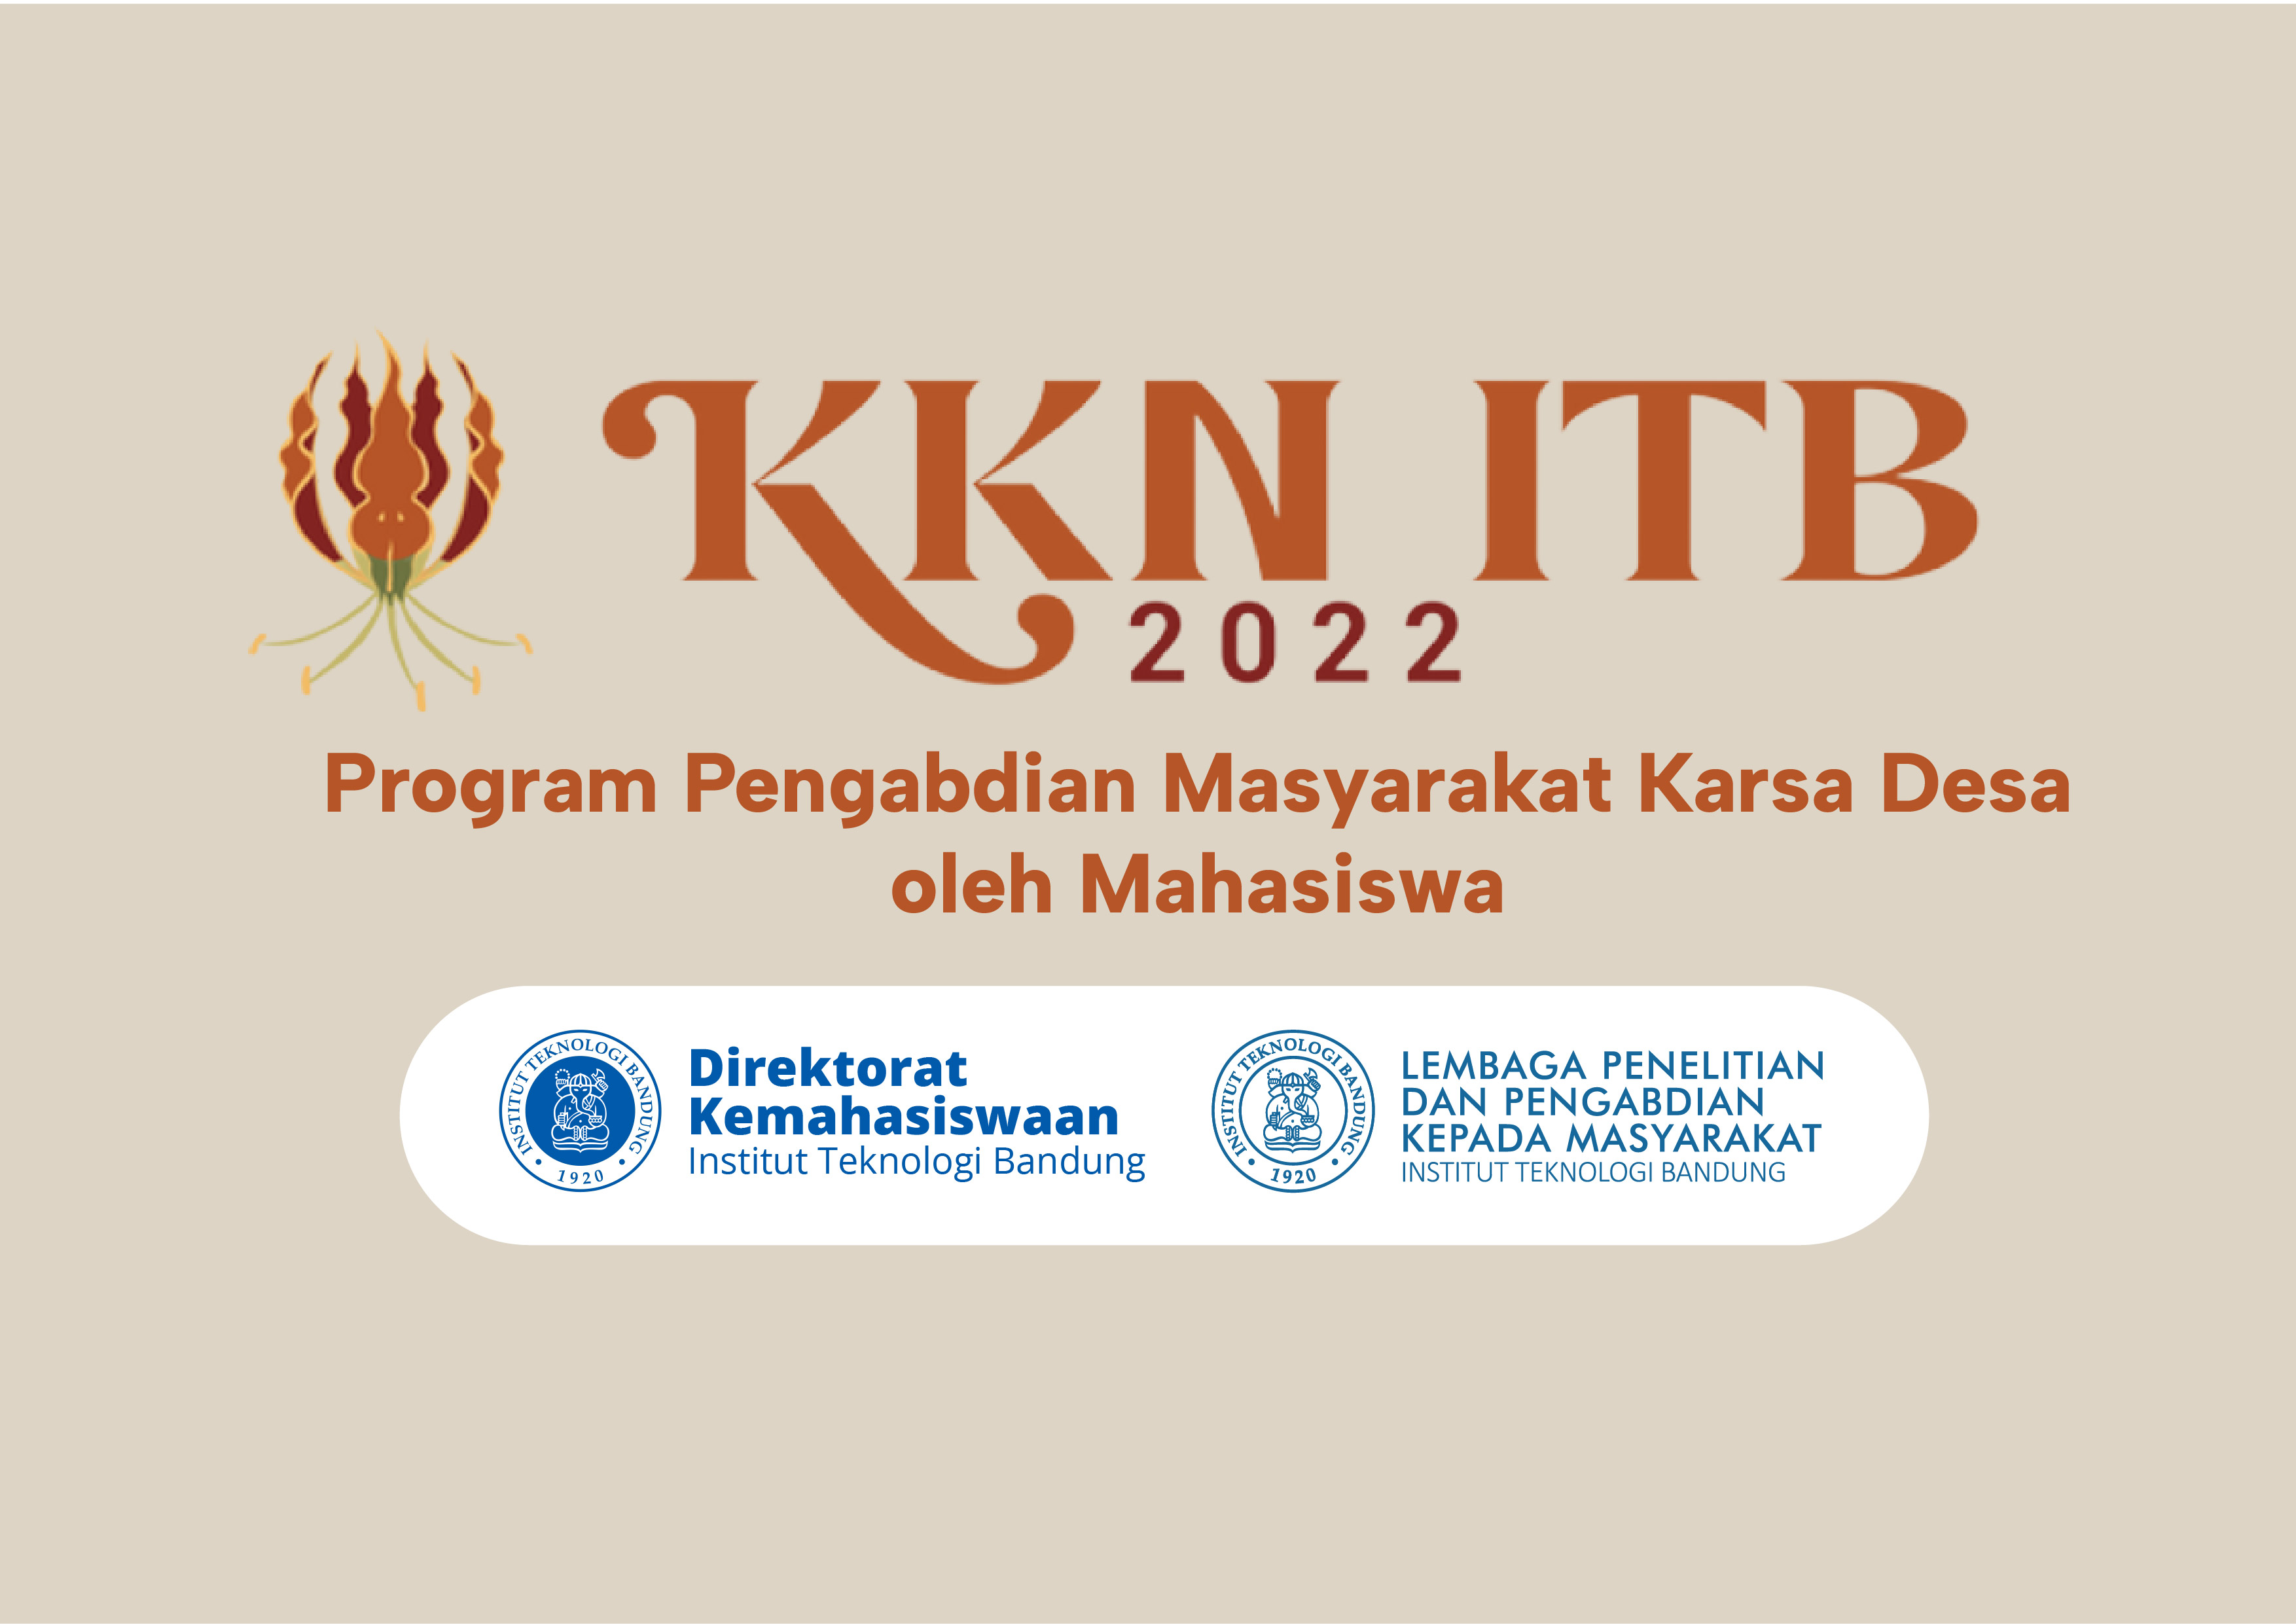 KKN ITB 2022